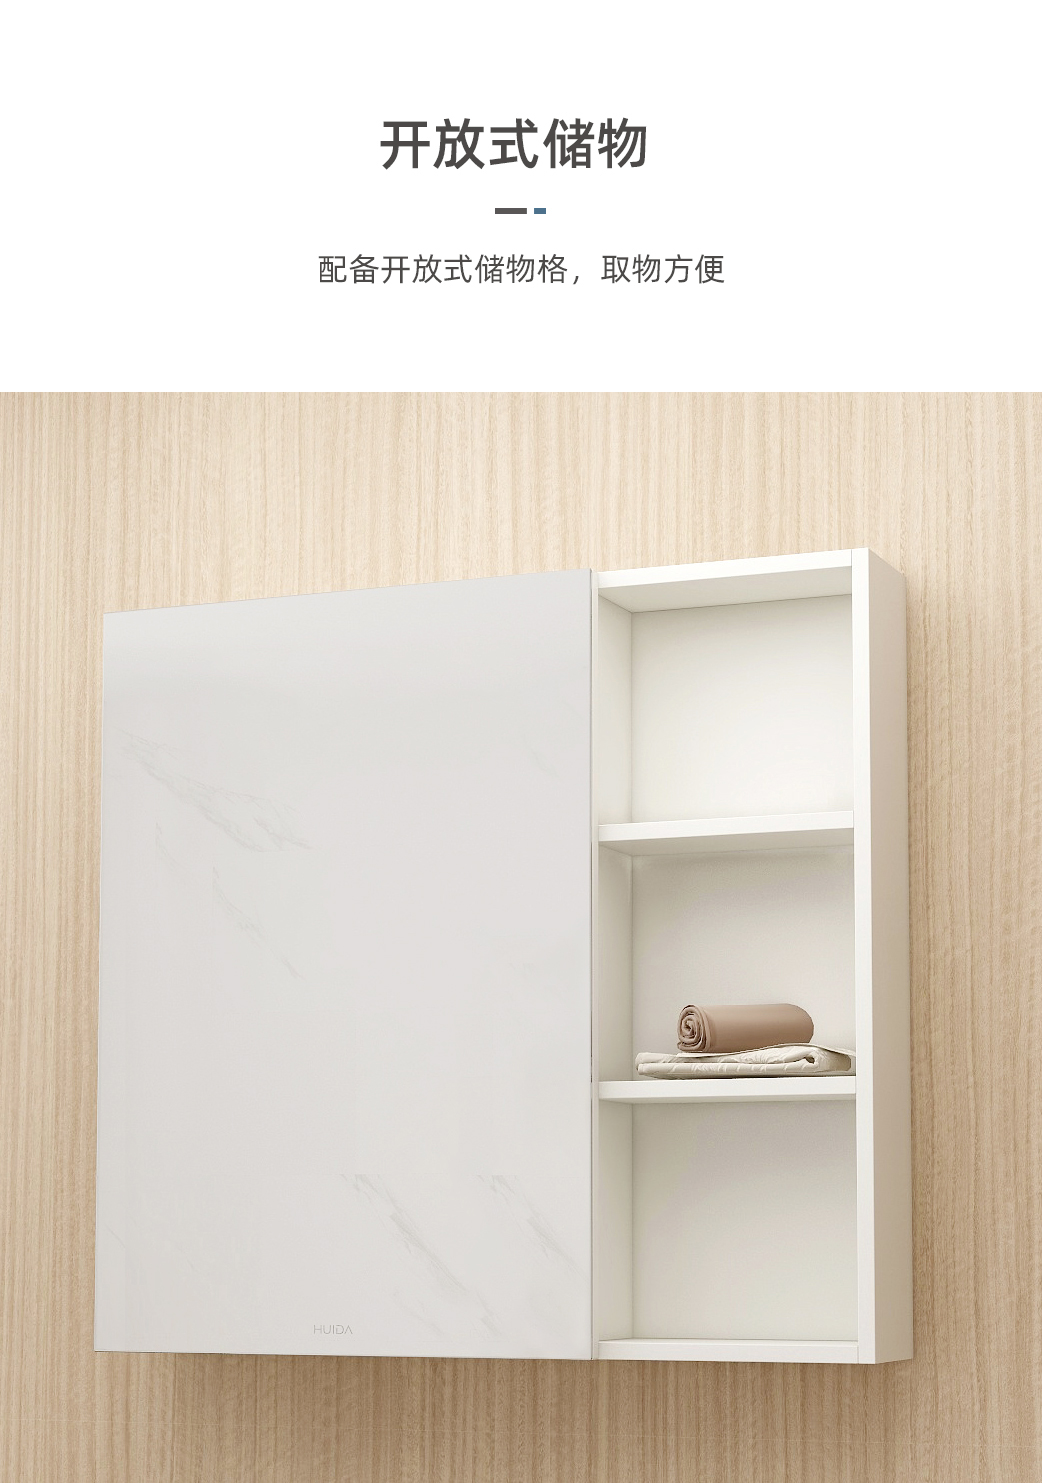 惠达卫浴浴室柜组合铝合金材质陶瓷面盆柜HFL0603-8156简约现代